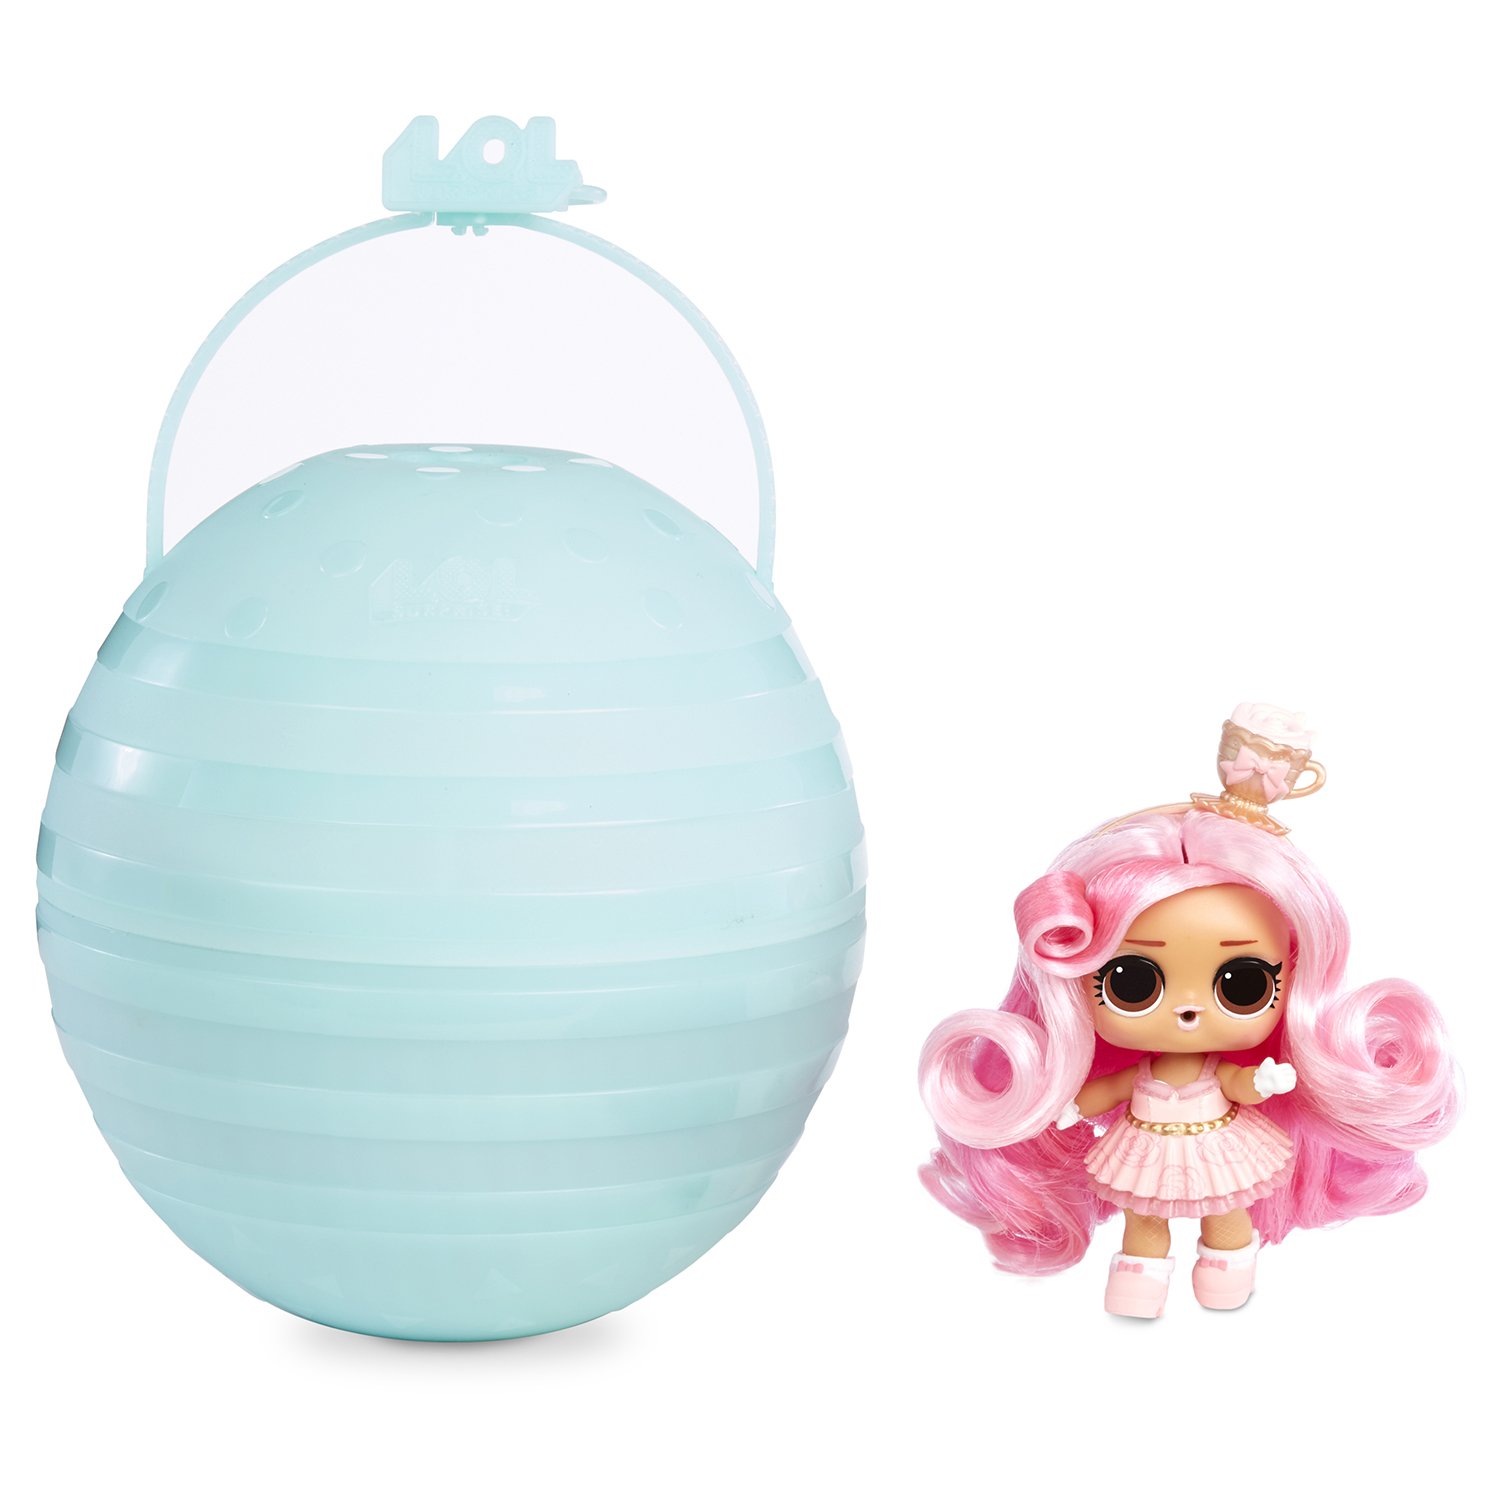 Кукла L.O.L. Surprise! 564744 с прядями для причесок в шаре в непрозрачной упаковке